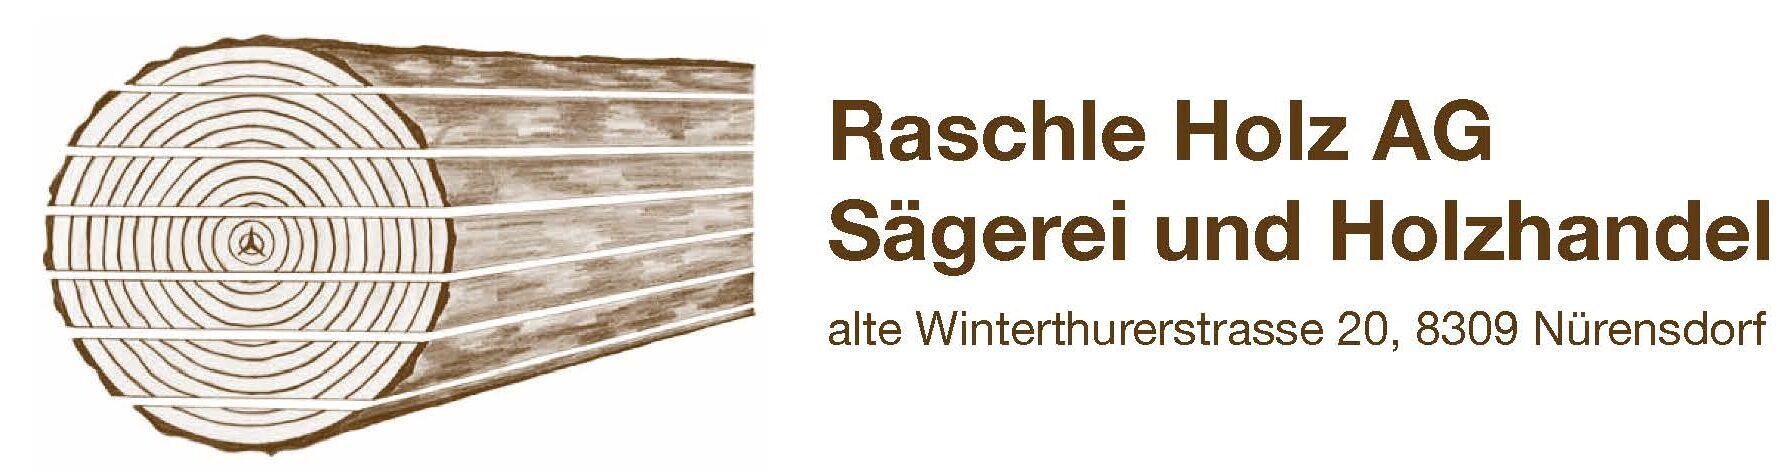 Raschle Holz AG